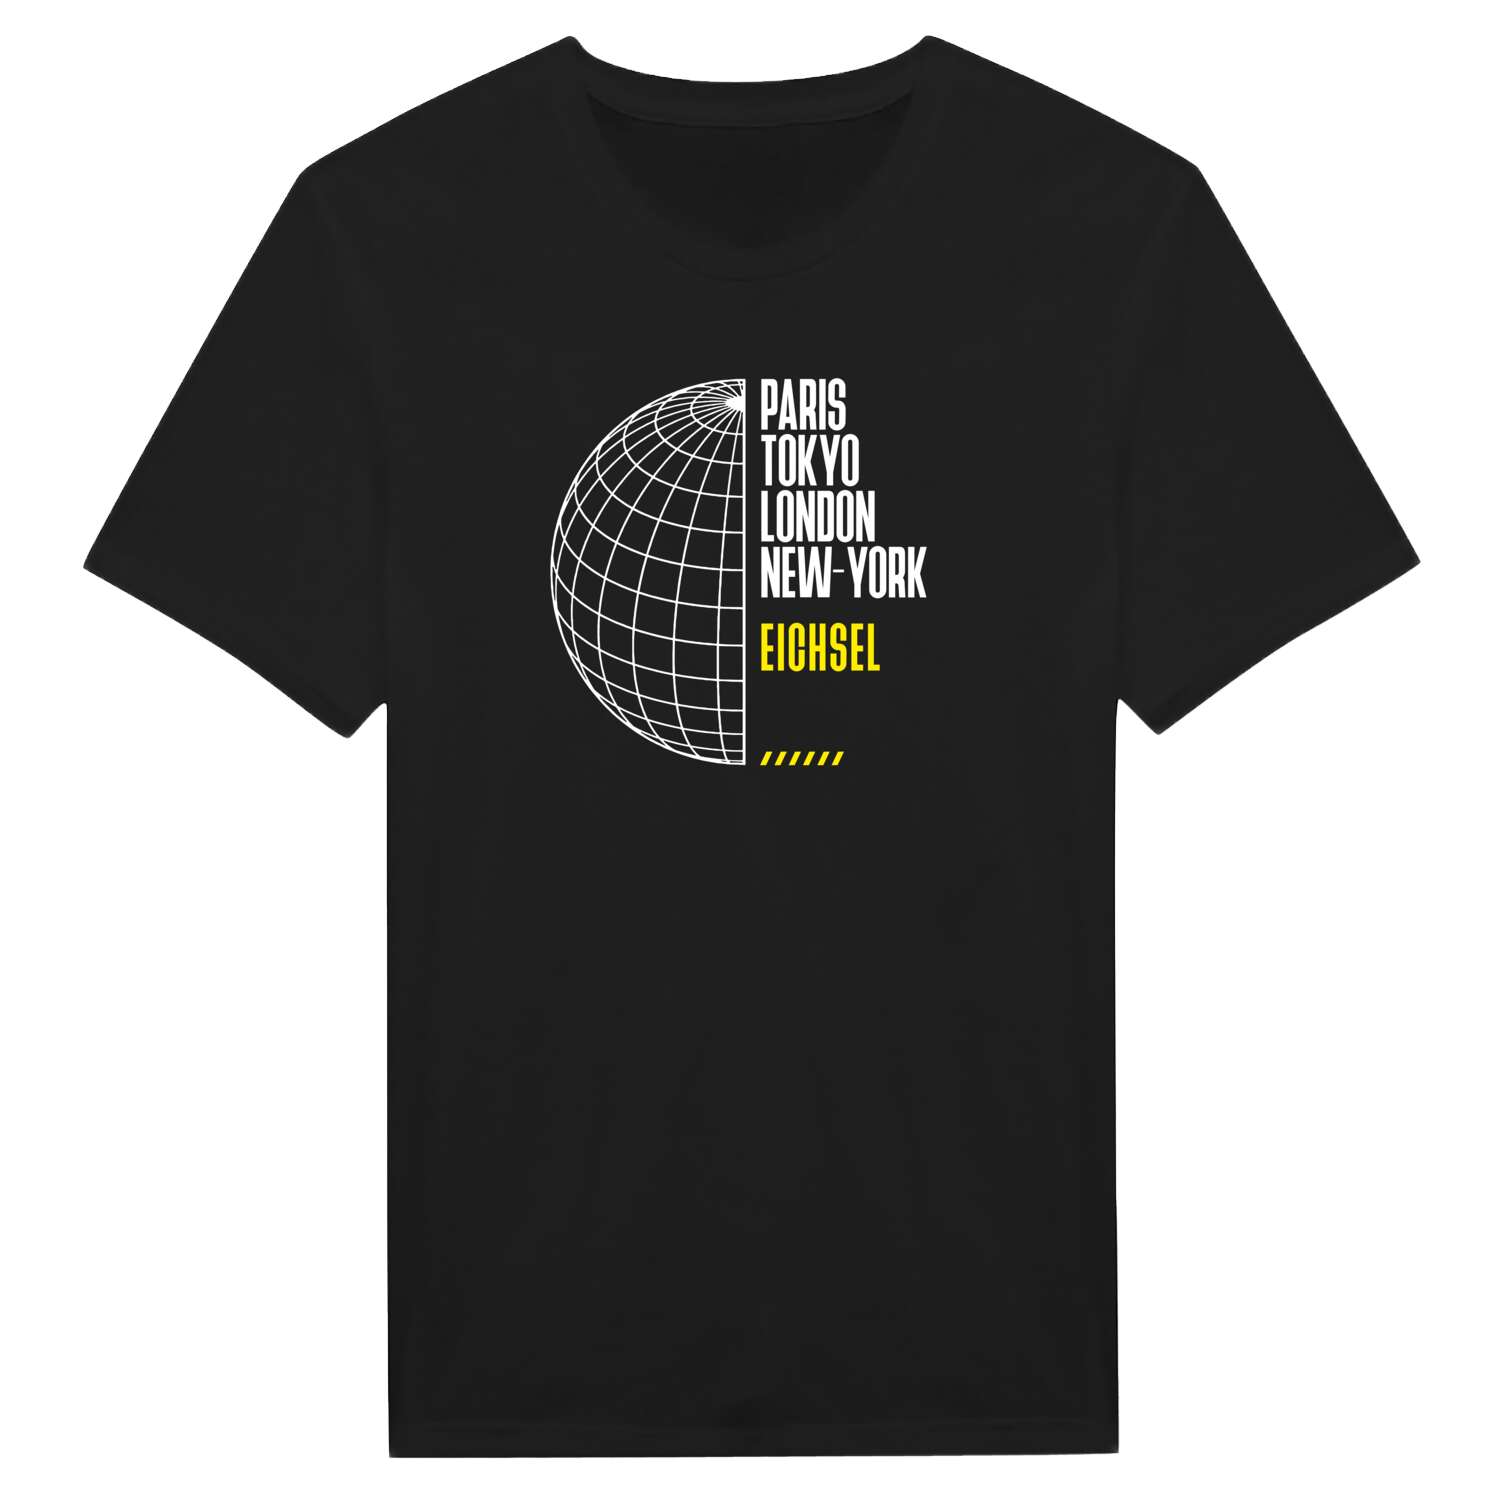 Eichsel T-Shirt »Paris Tokyo London«